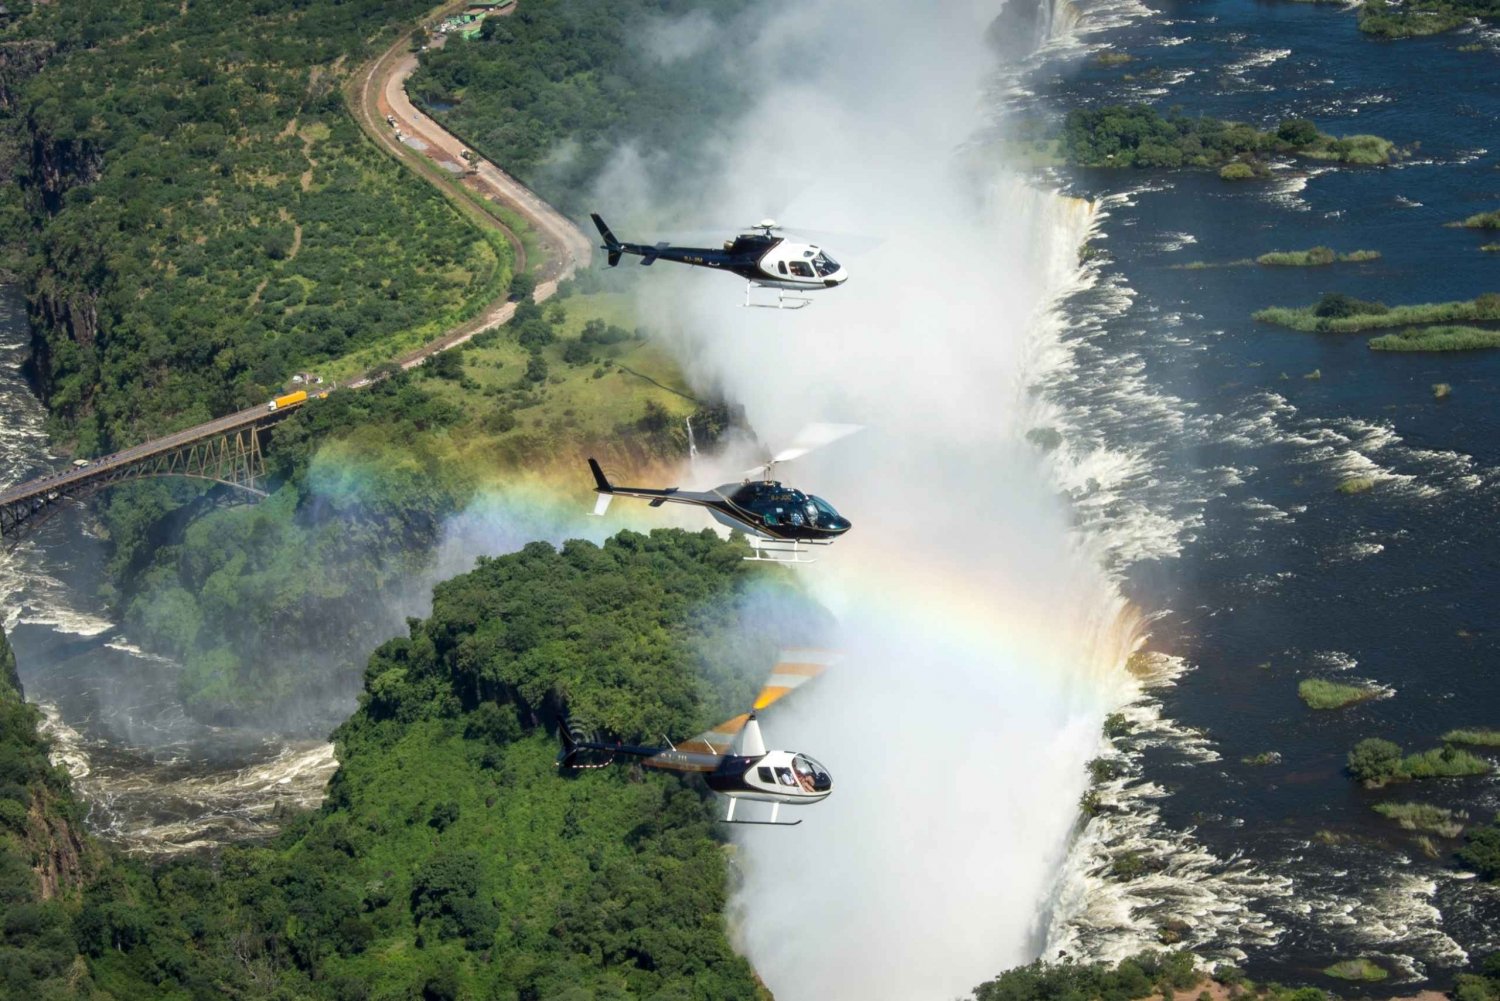 Livingstone: Voo de Helicóptero sobre Cataratas de Vitória